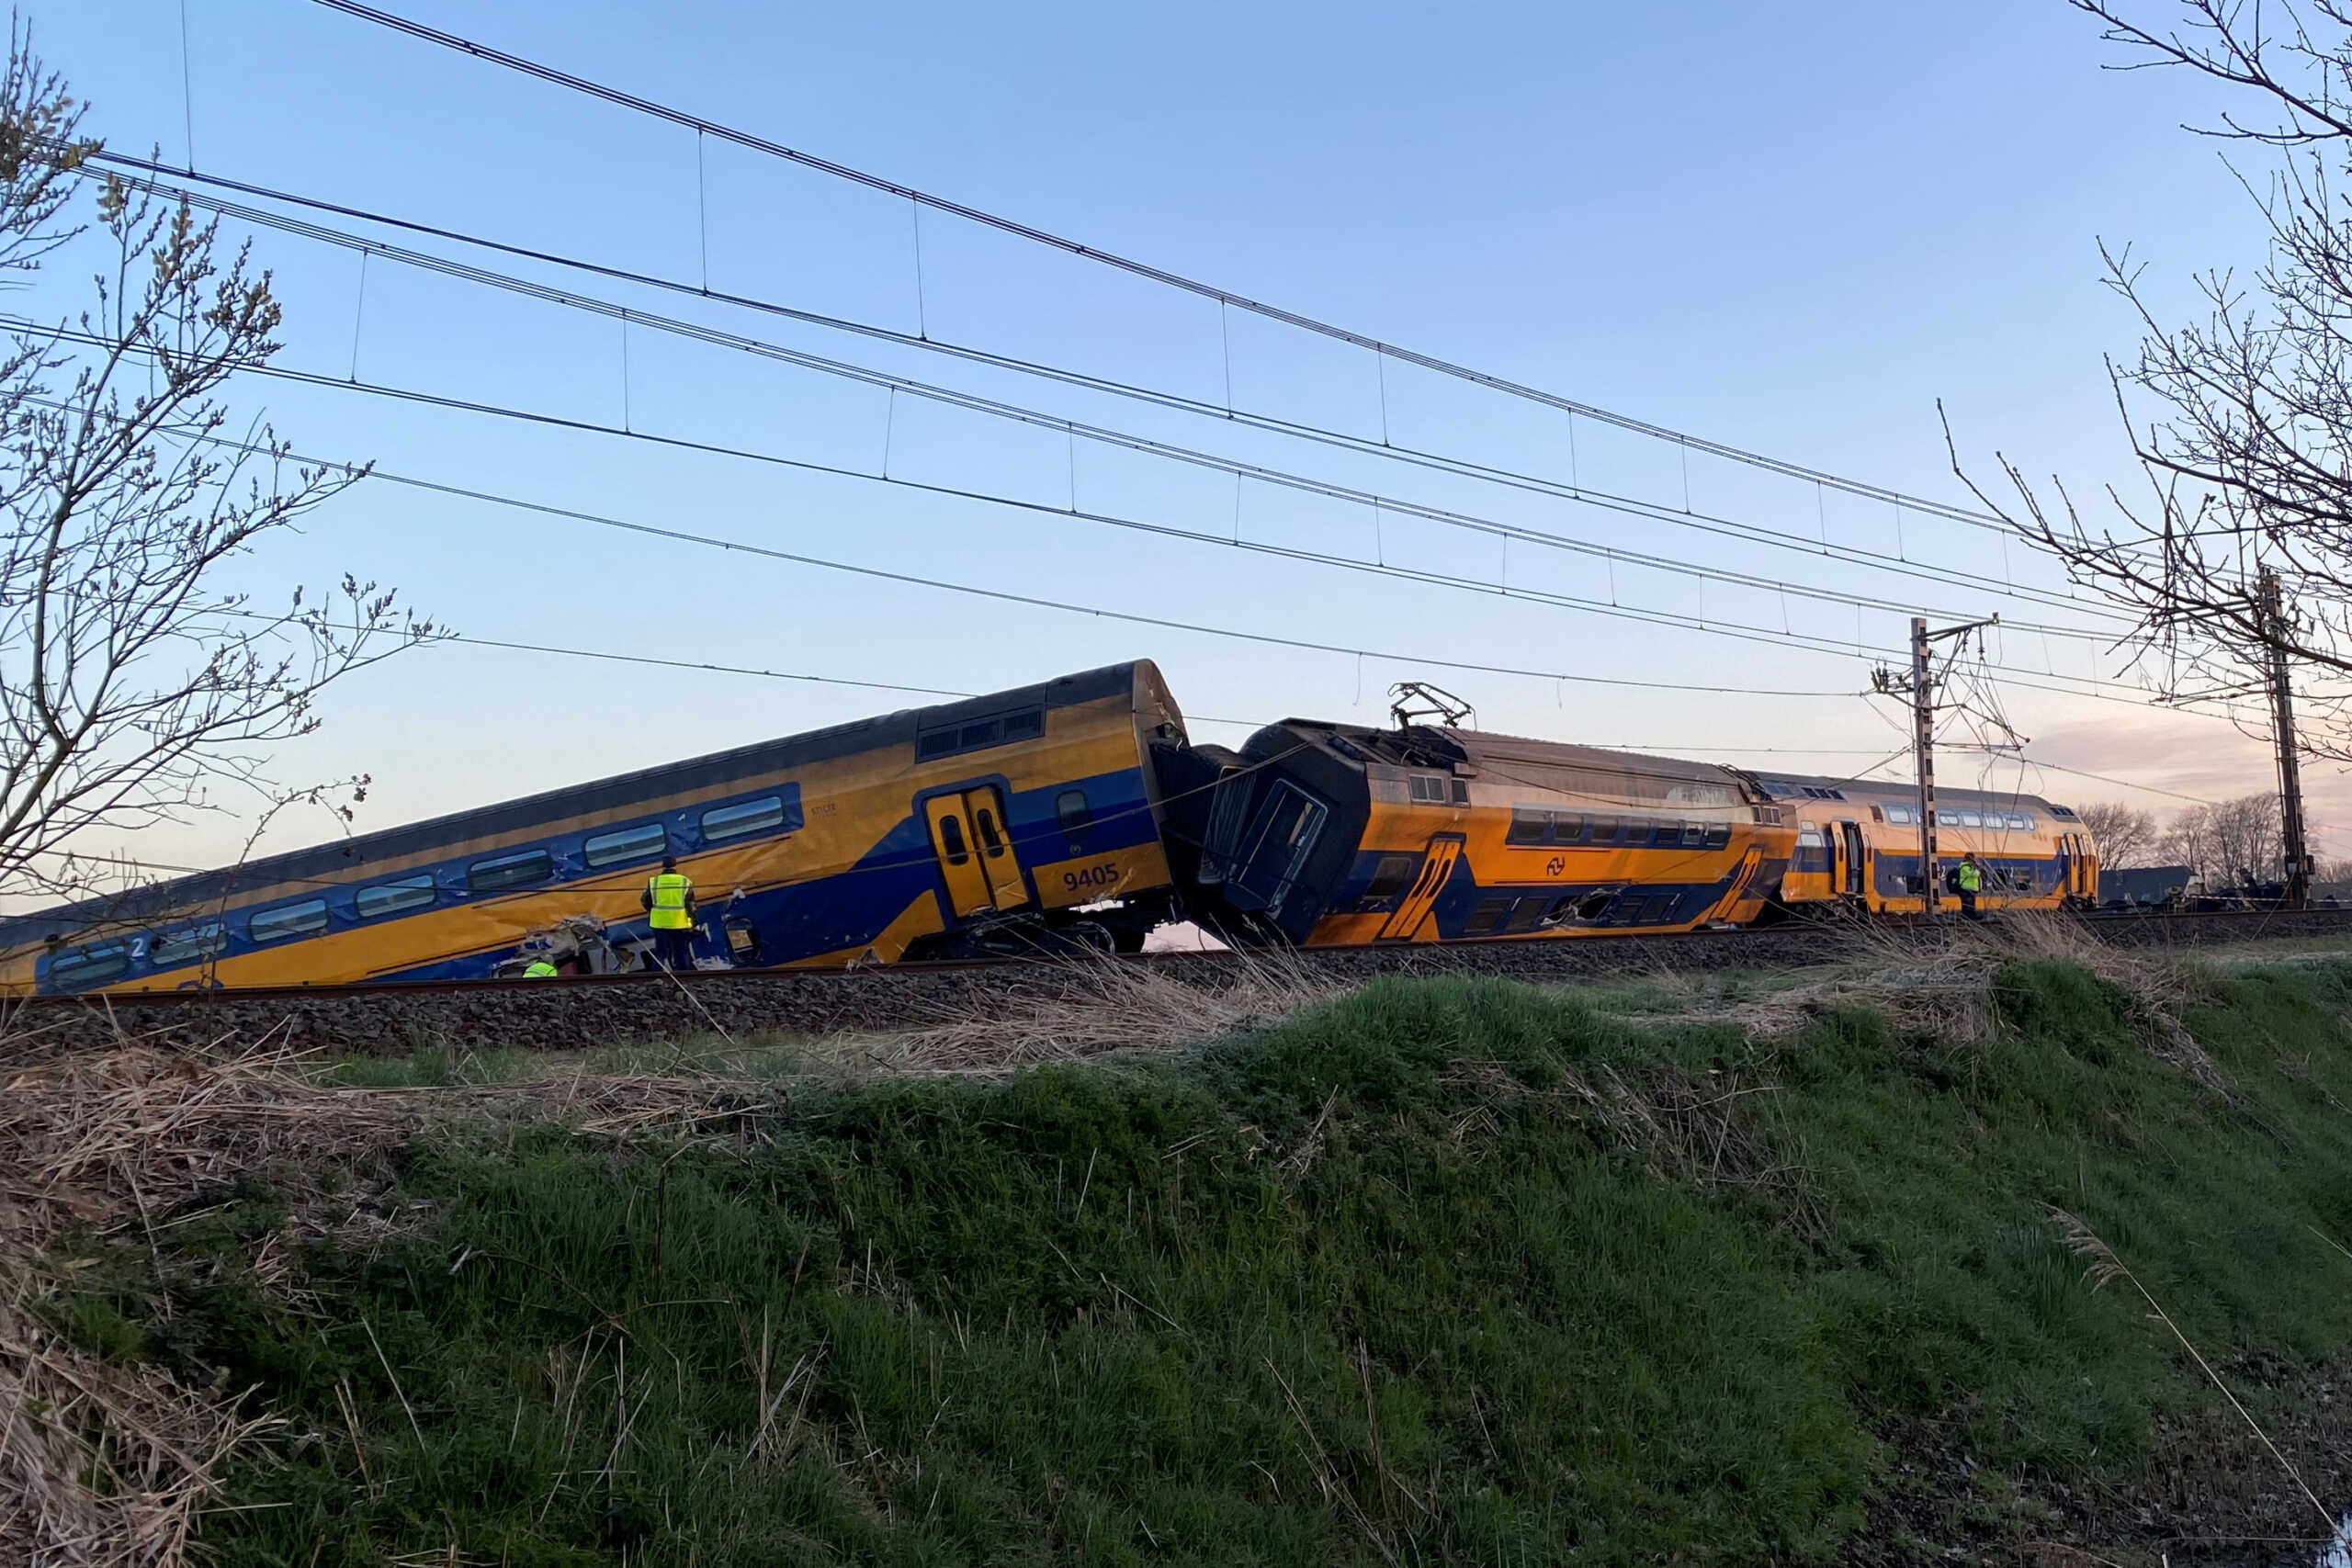 Ολλανδία: «Ήταν σαν ταινία, ο μηχανοδηγός ούρλιαξε» – Συγκλονιστικές μαρτυρίες επιβατών του τρένου που εκτροχιάστηκε